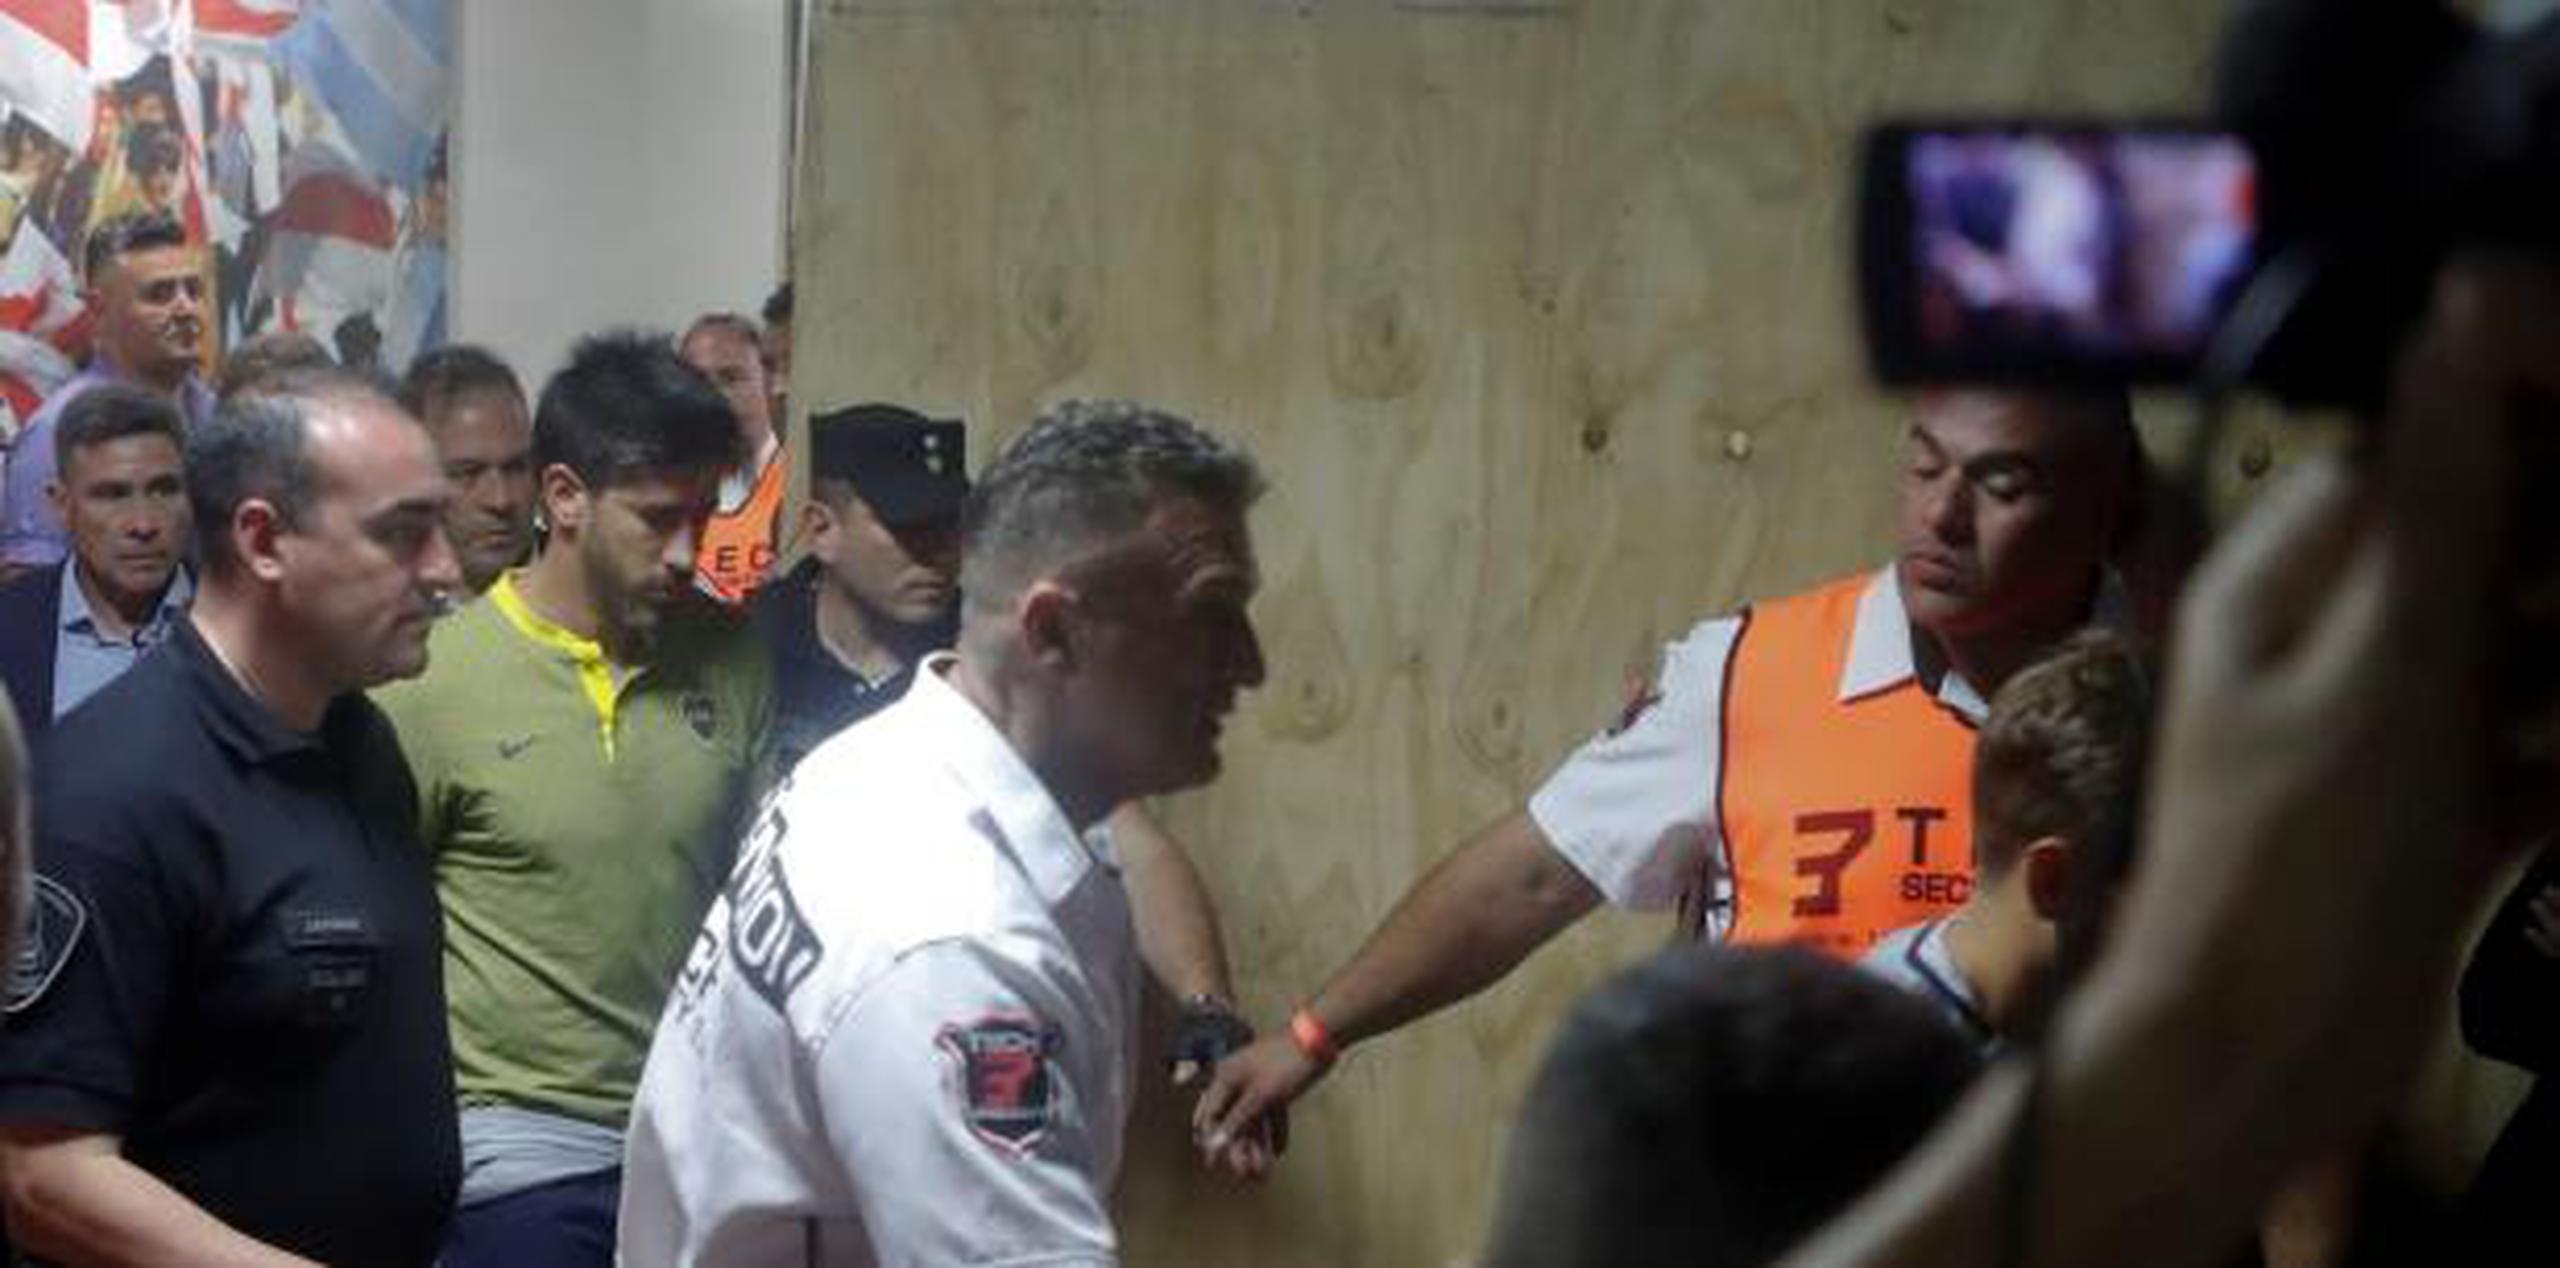 El jugador de Boca Juniors Pablo Pérez (c) sale acompañado por médicos luego que el autobús del equipo fuera atacado por aficionados de River Plate. (EFE)